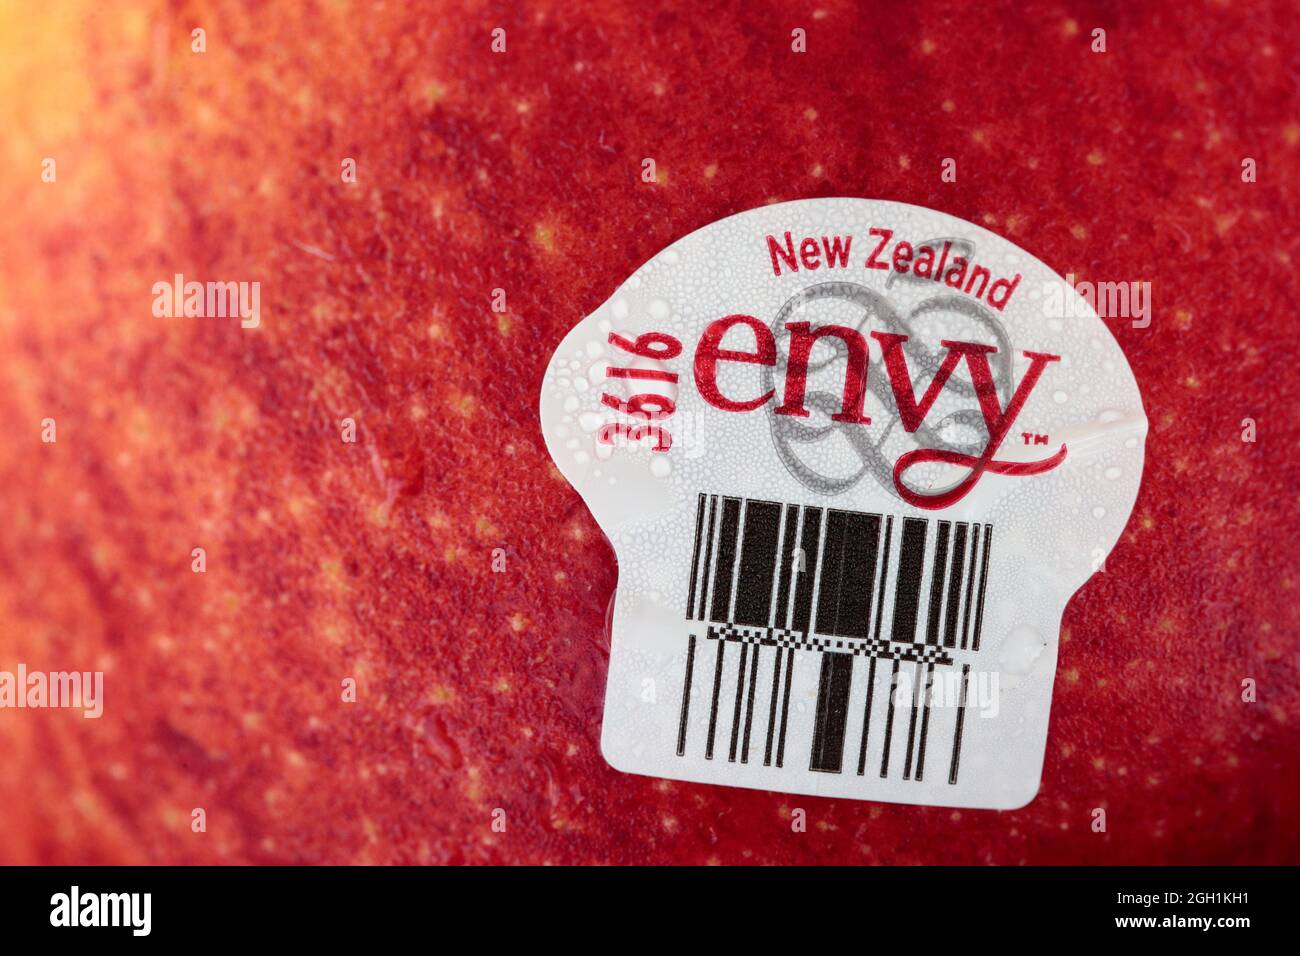 Nahaufnahme von Neuseeland Envy Apple und Label, gekauft in Hongkong am 30. August 2021 Stockfoto